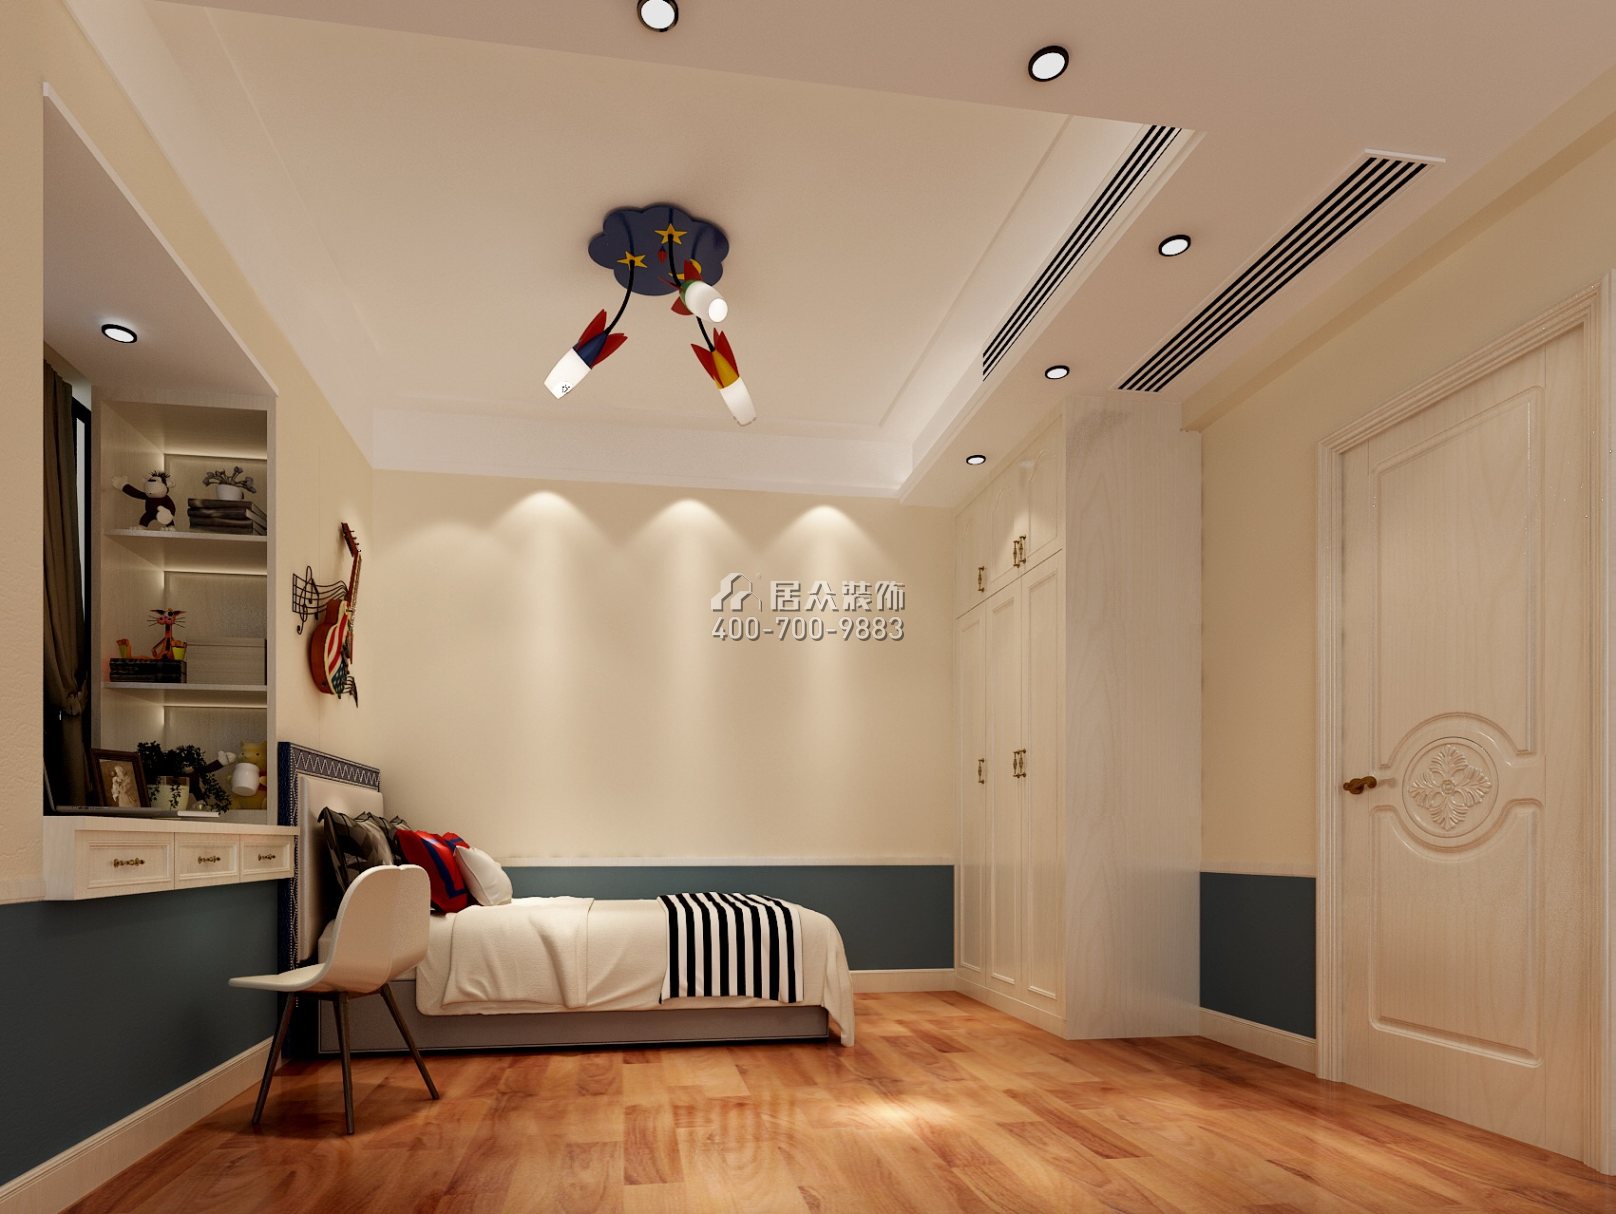 華盈愛琴灣175平方米歐式風格平層戶型臥室裝修效果圖